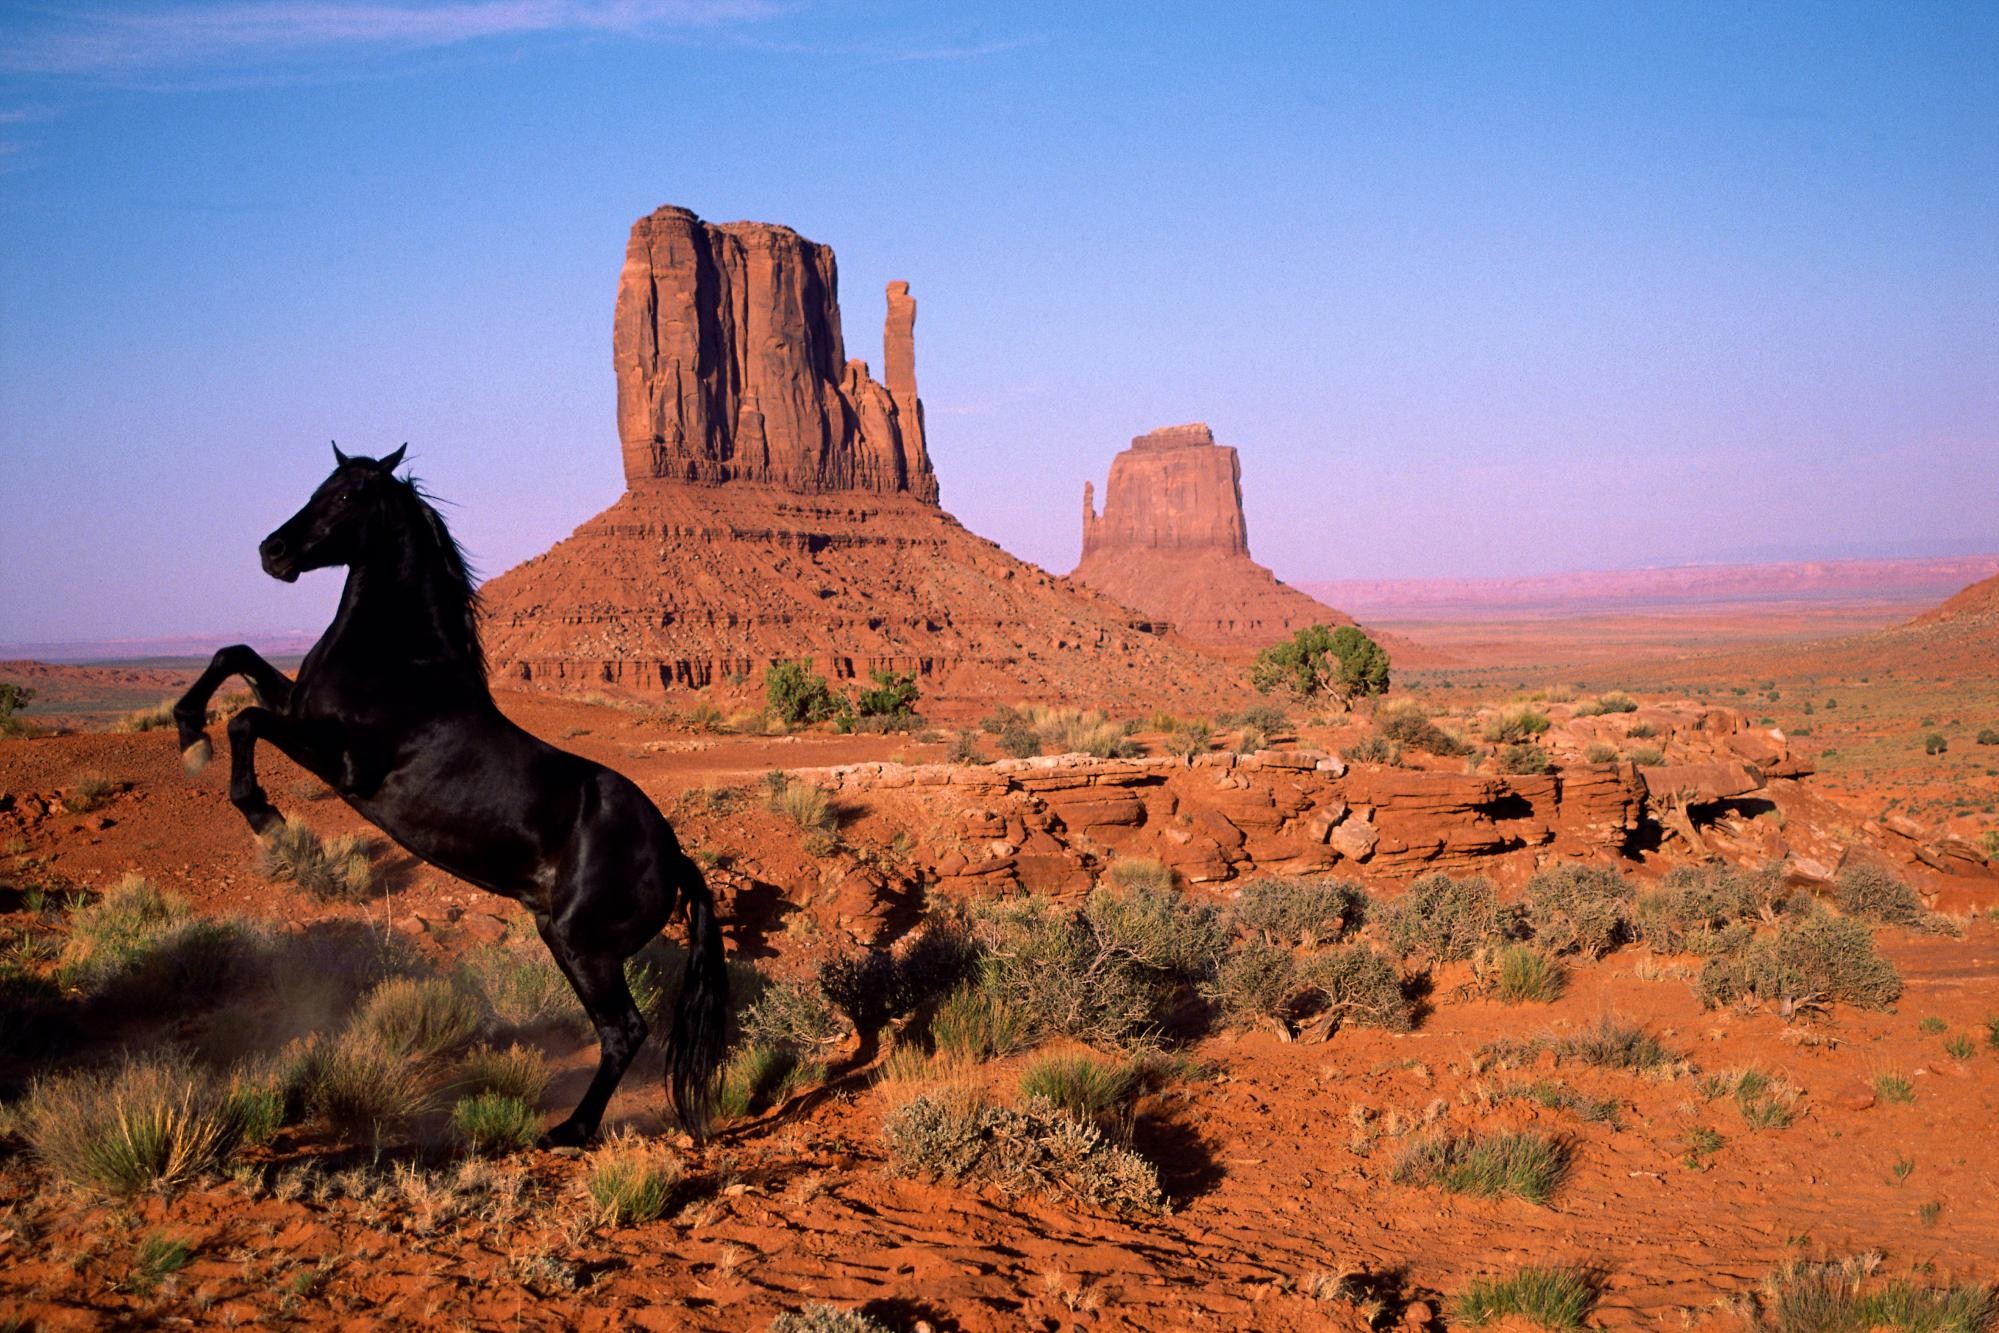 nature, animals, horses, rock formations - desktop wallpaper